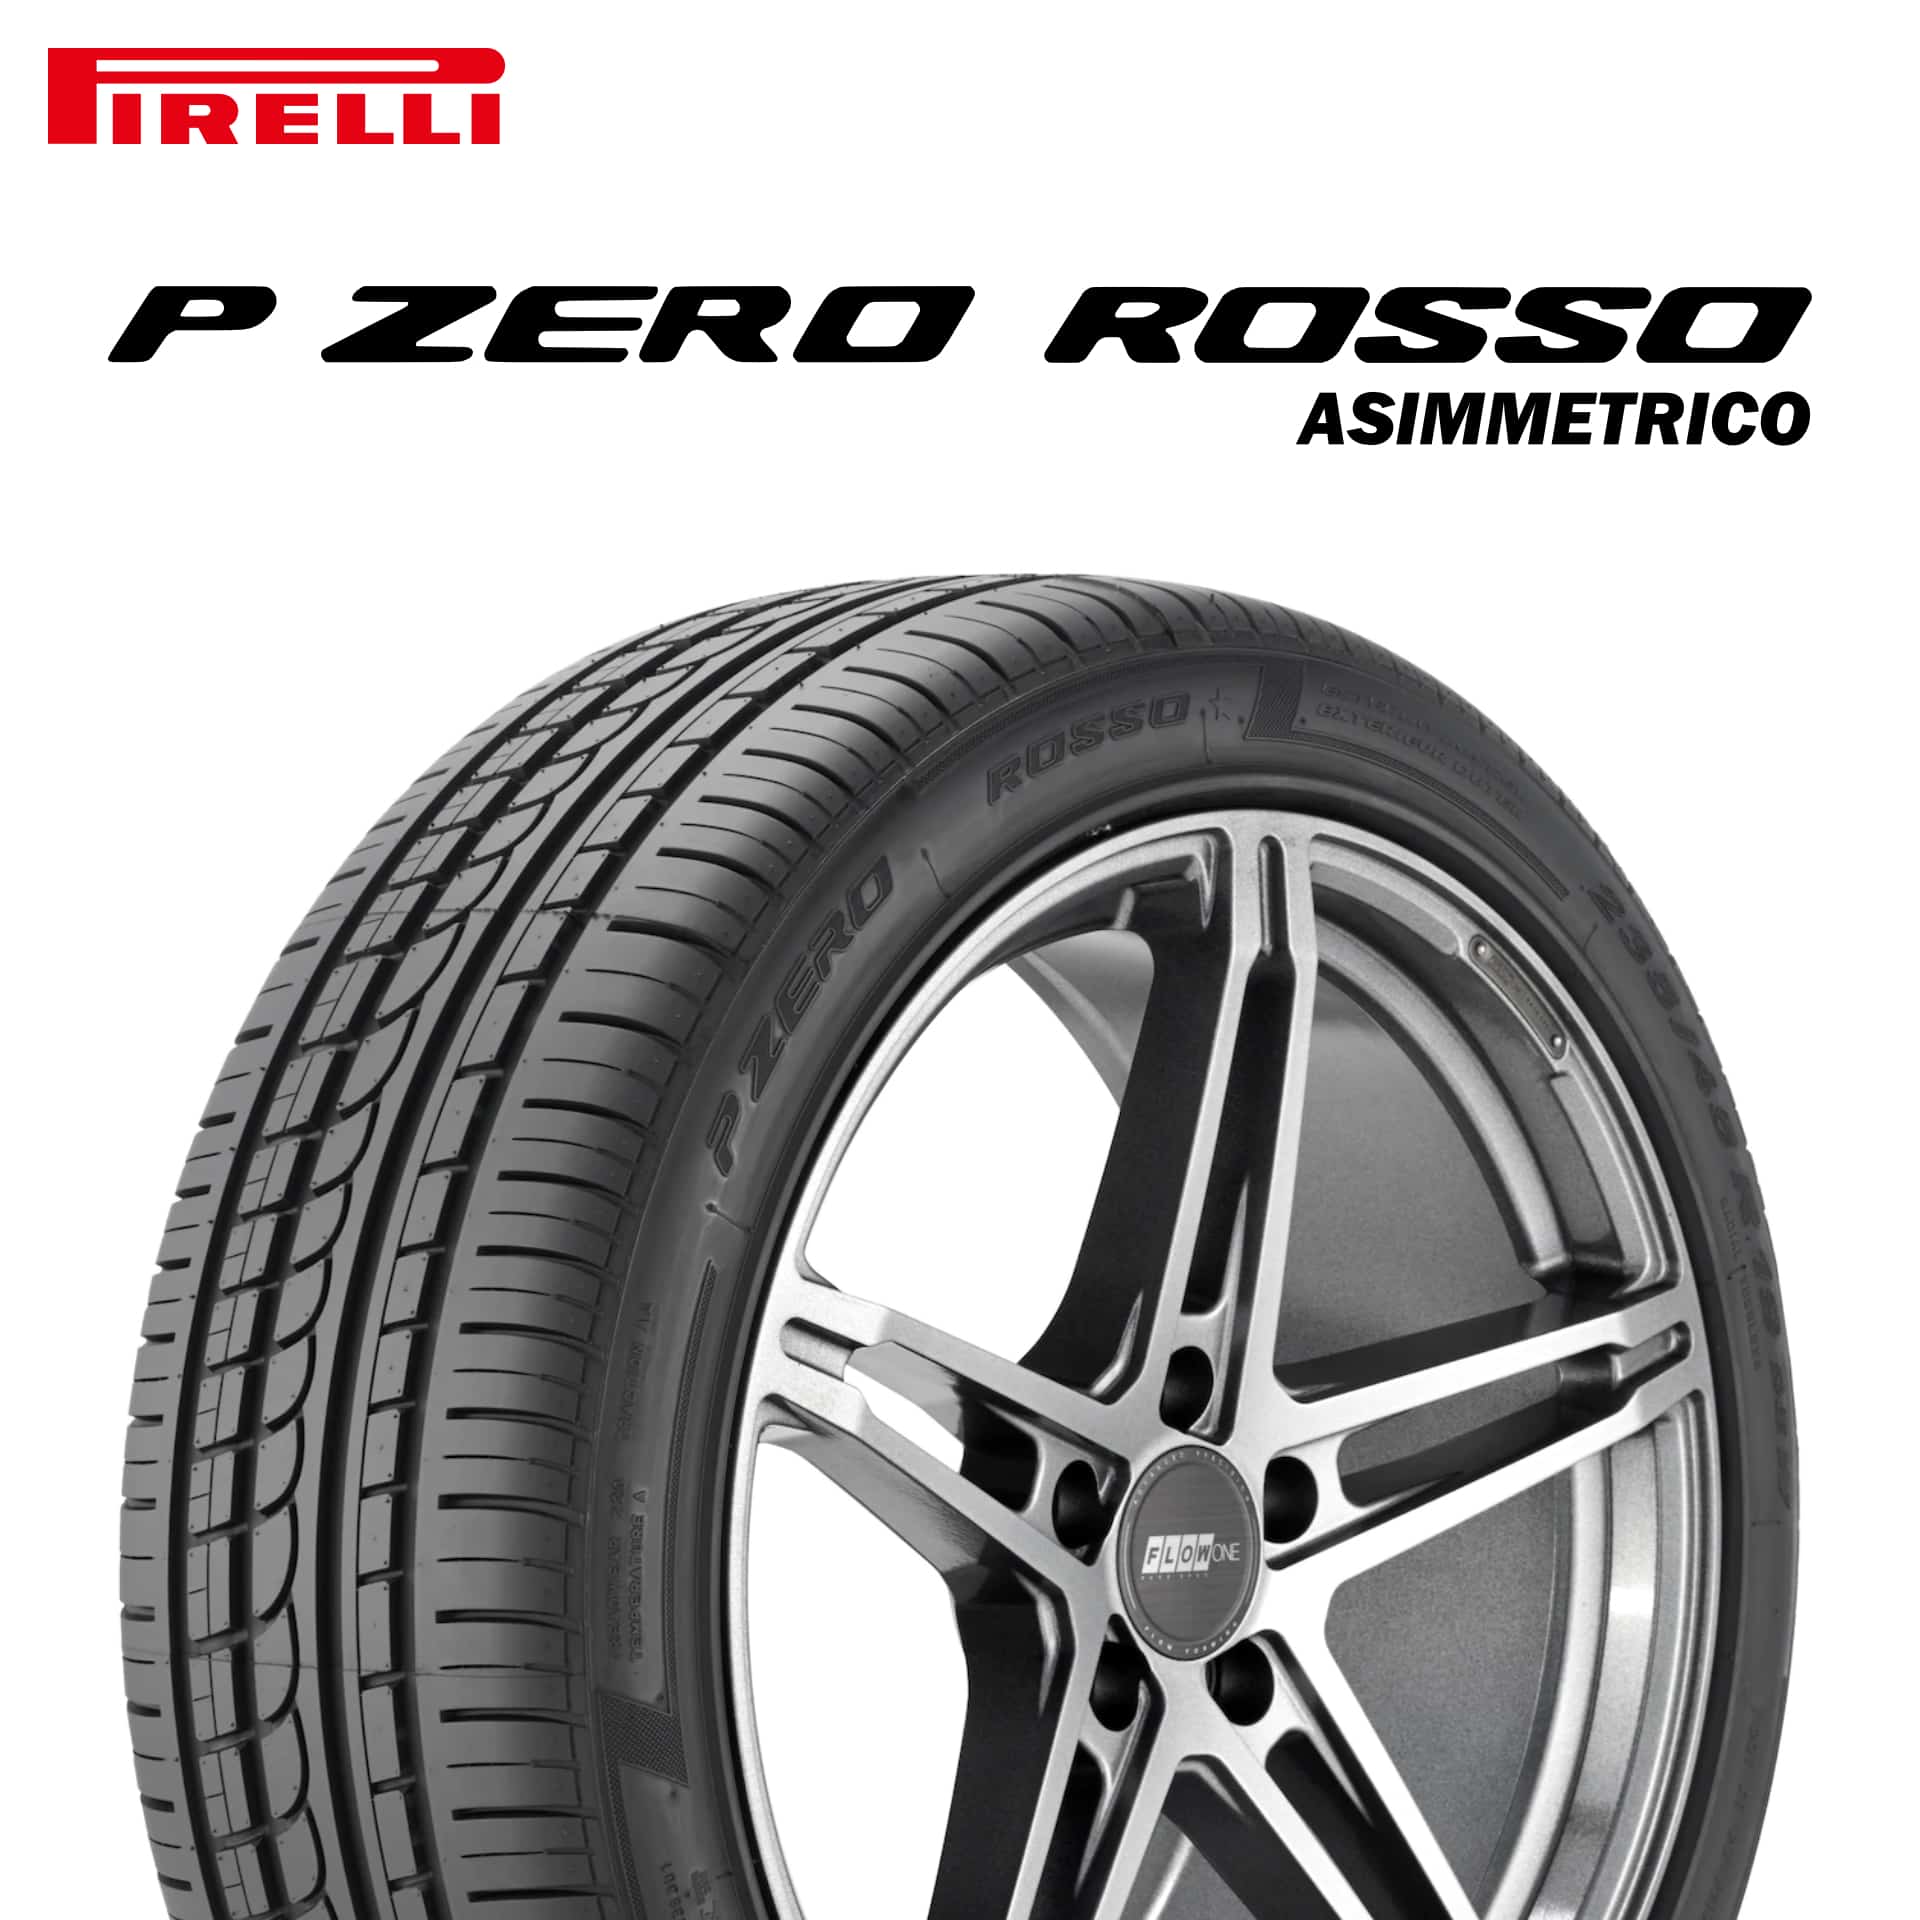 22年製 255/40R17 (94Y) N5 ピレリ P ZERO ROSSO ASIMMETRICO (ピーゼロ ロッソ アシンメトリコ) ポルシェ承認タイヤ 17インチ 新品